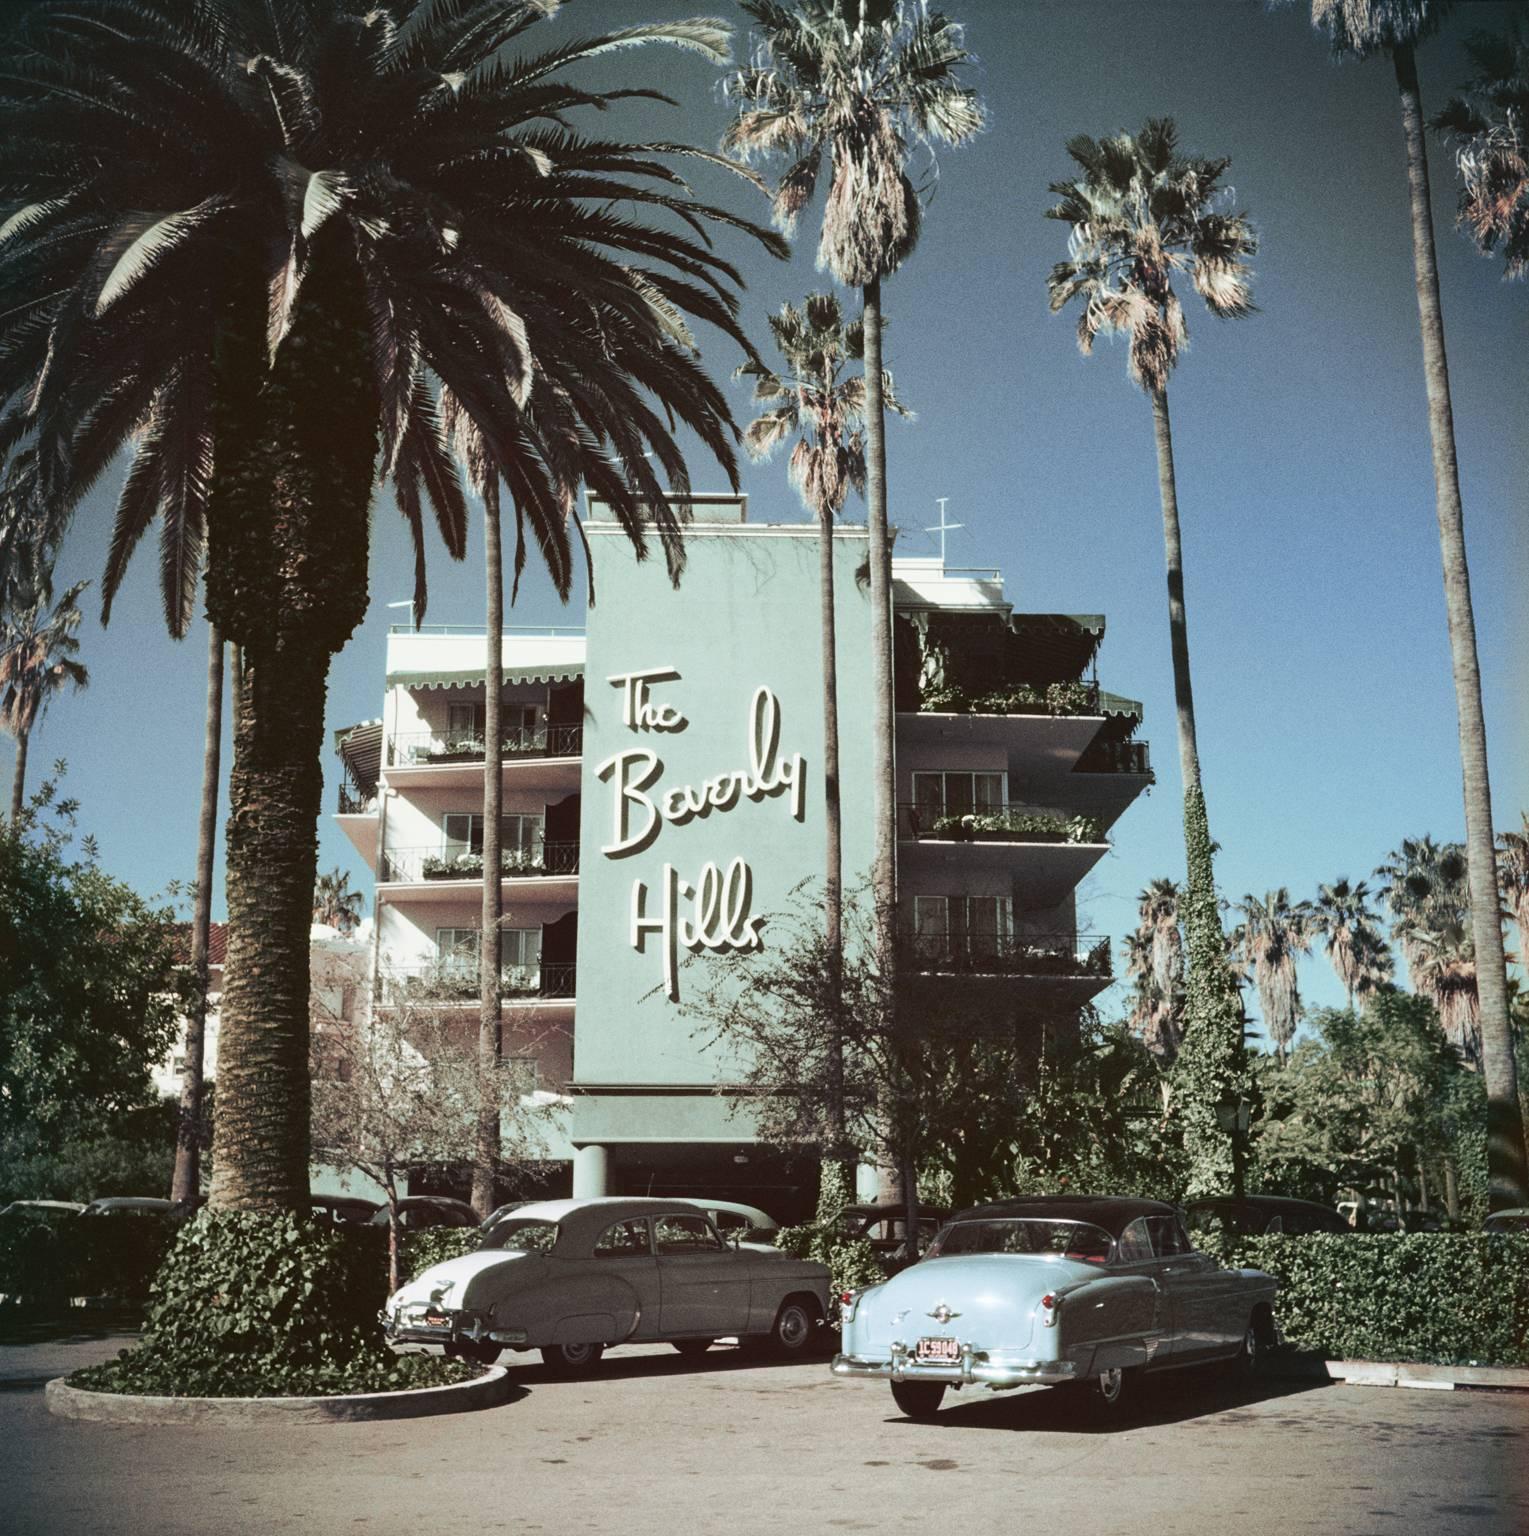 Beverly Hills Hotel von Slim Aarons

Schöne Autos aus den 1950er Jahren, geparkt vor dem berühmten Beverly Hills Hotel am Sunset Boulevard in Kalifornien, 1957. 

Typisch "Slim" verkörpert dieses Foto elegantes Reisen und den Vintage-Stil und